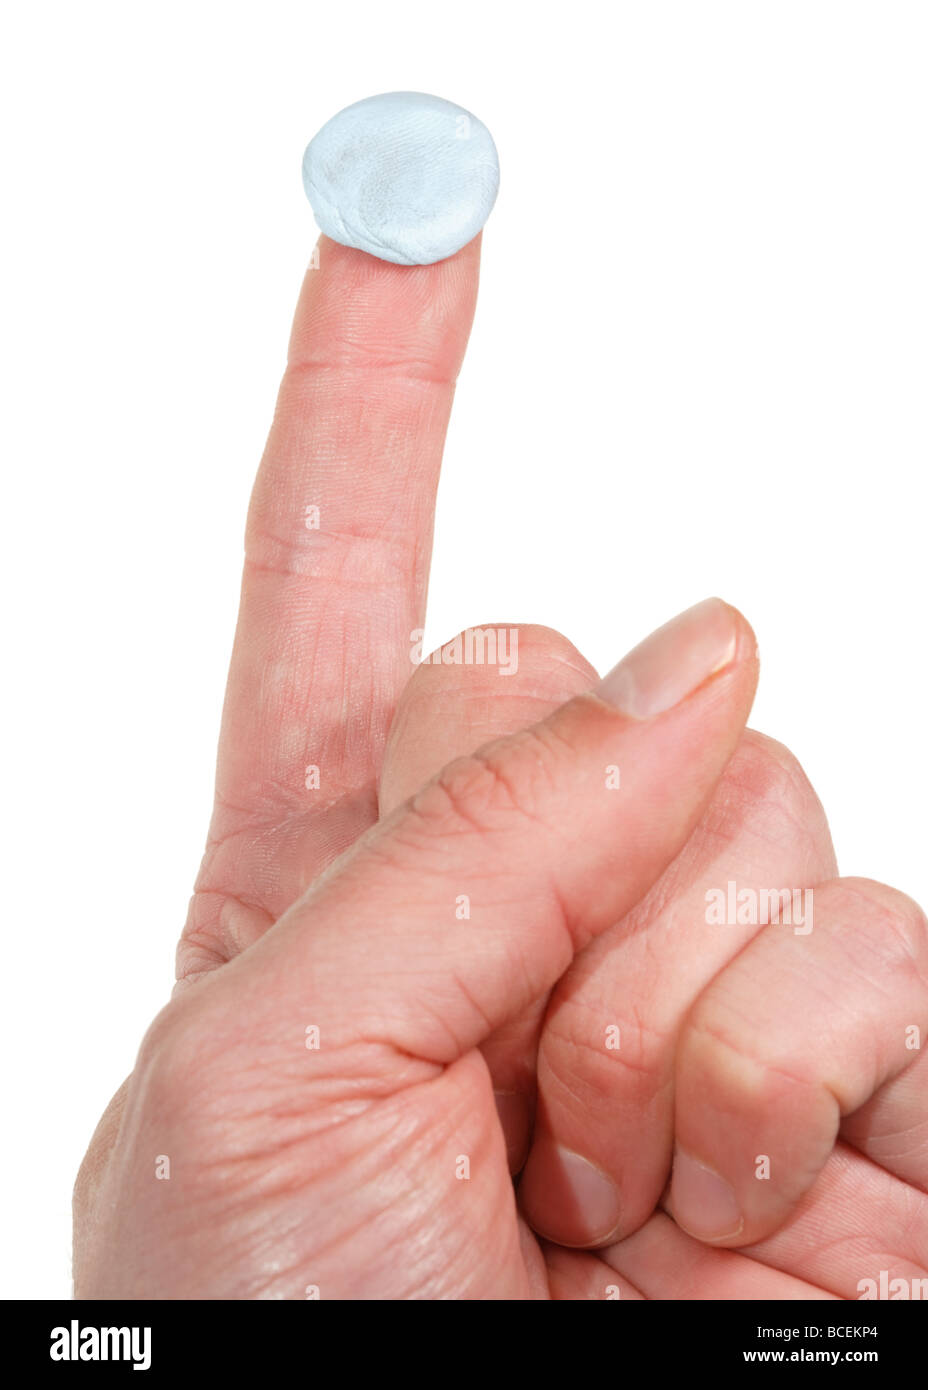 Un niño con una cartera apunta con su dedo índice a su anuncio